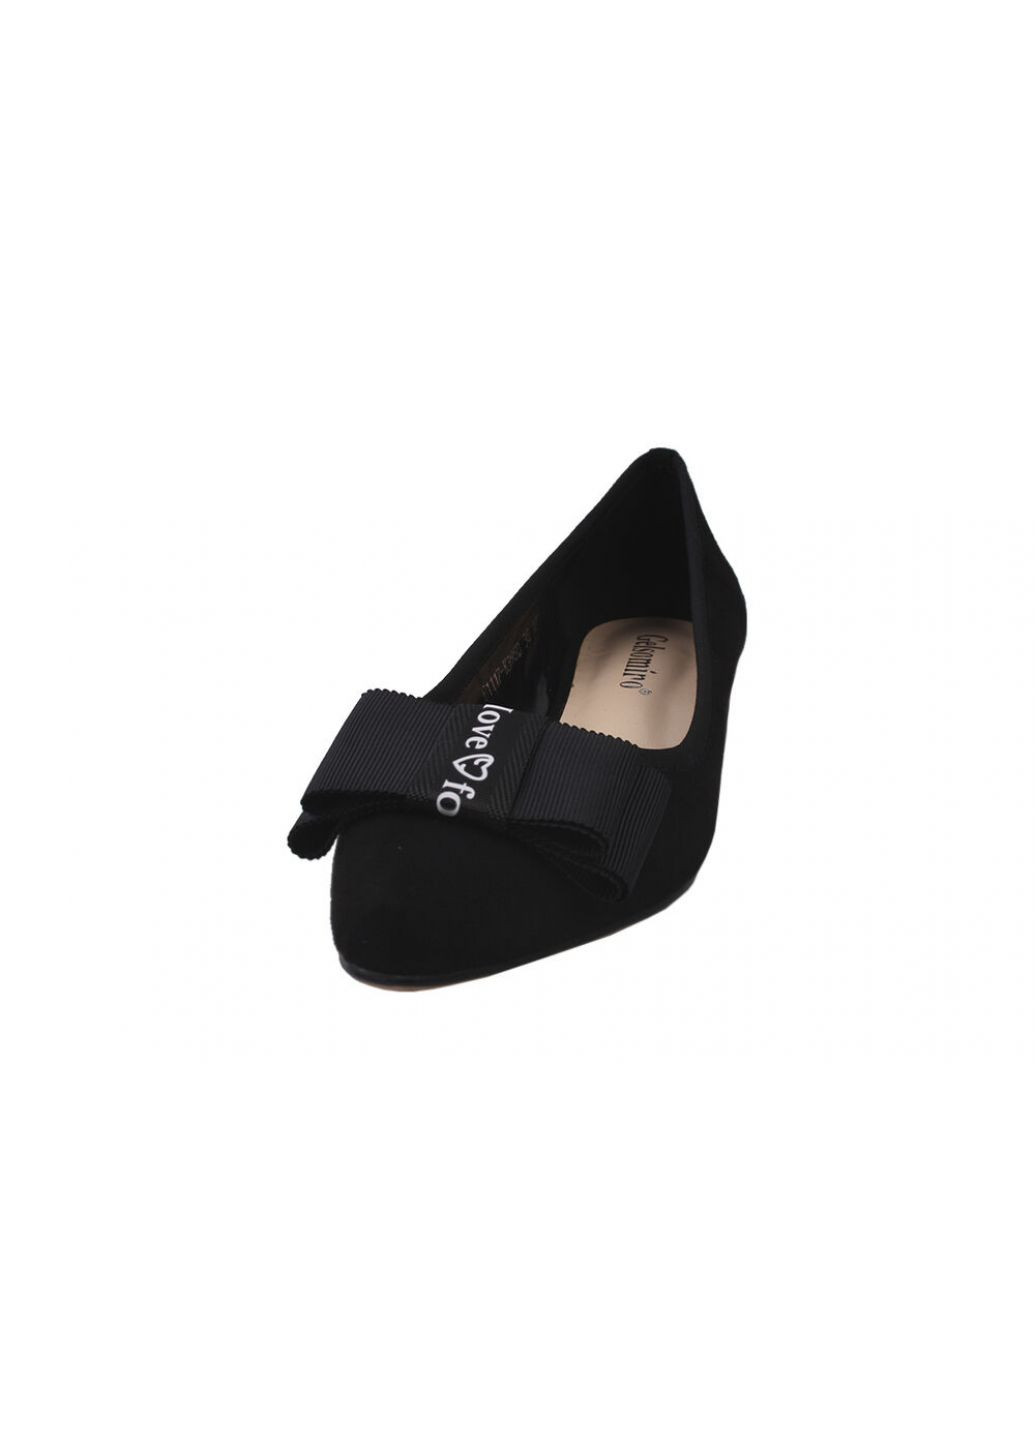 Туфли на низком ходу женские эко замш, цвет черный Gelsomino